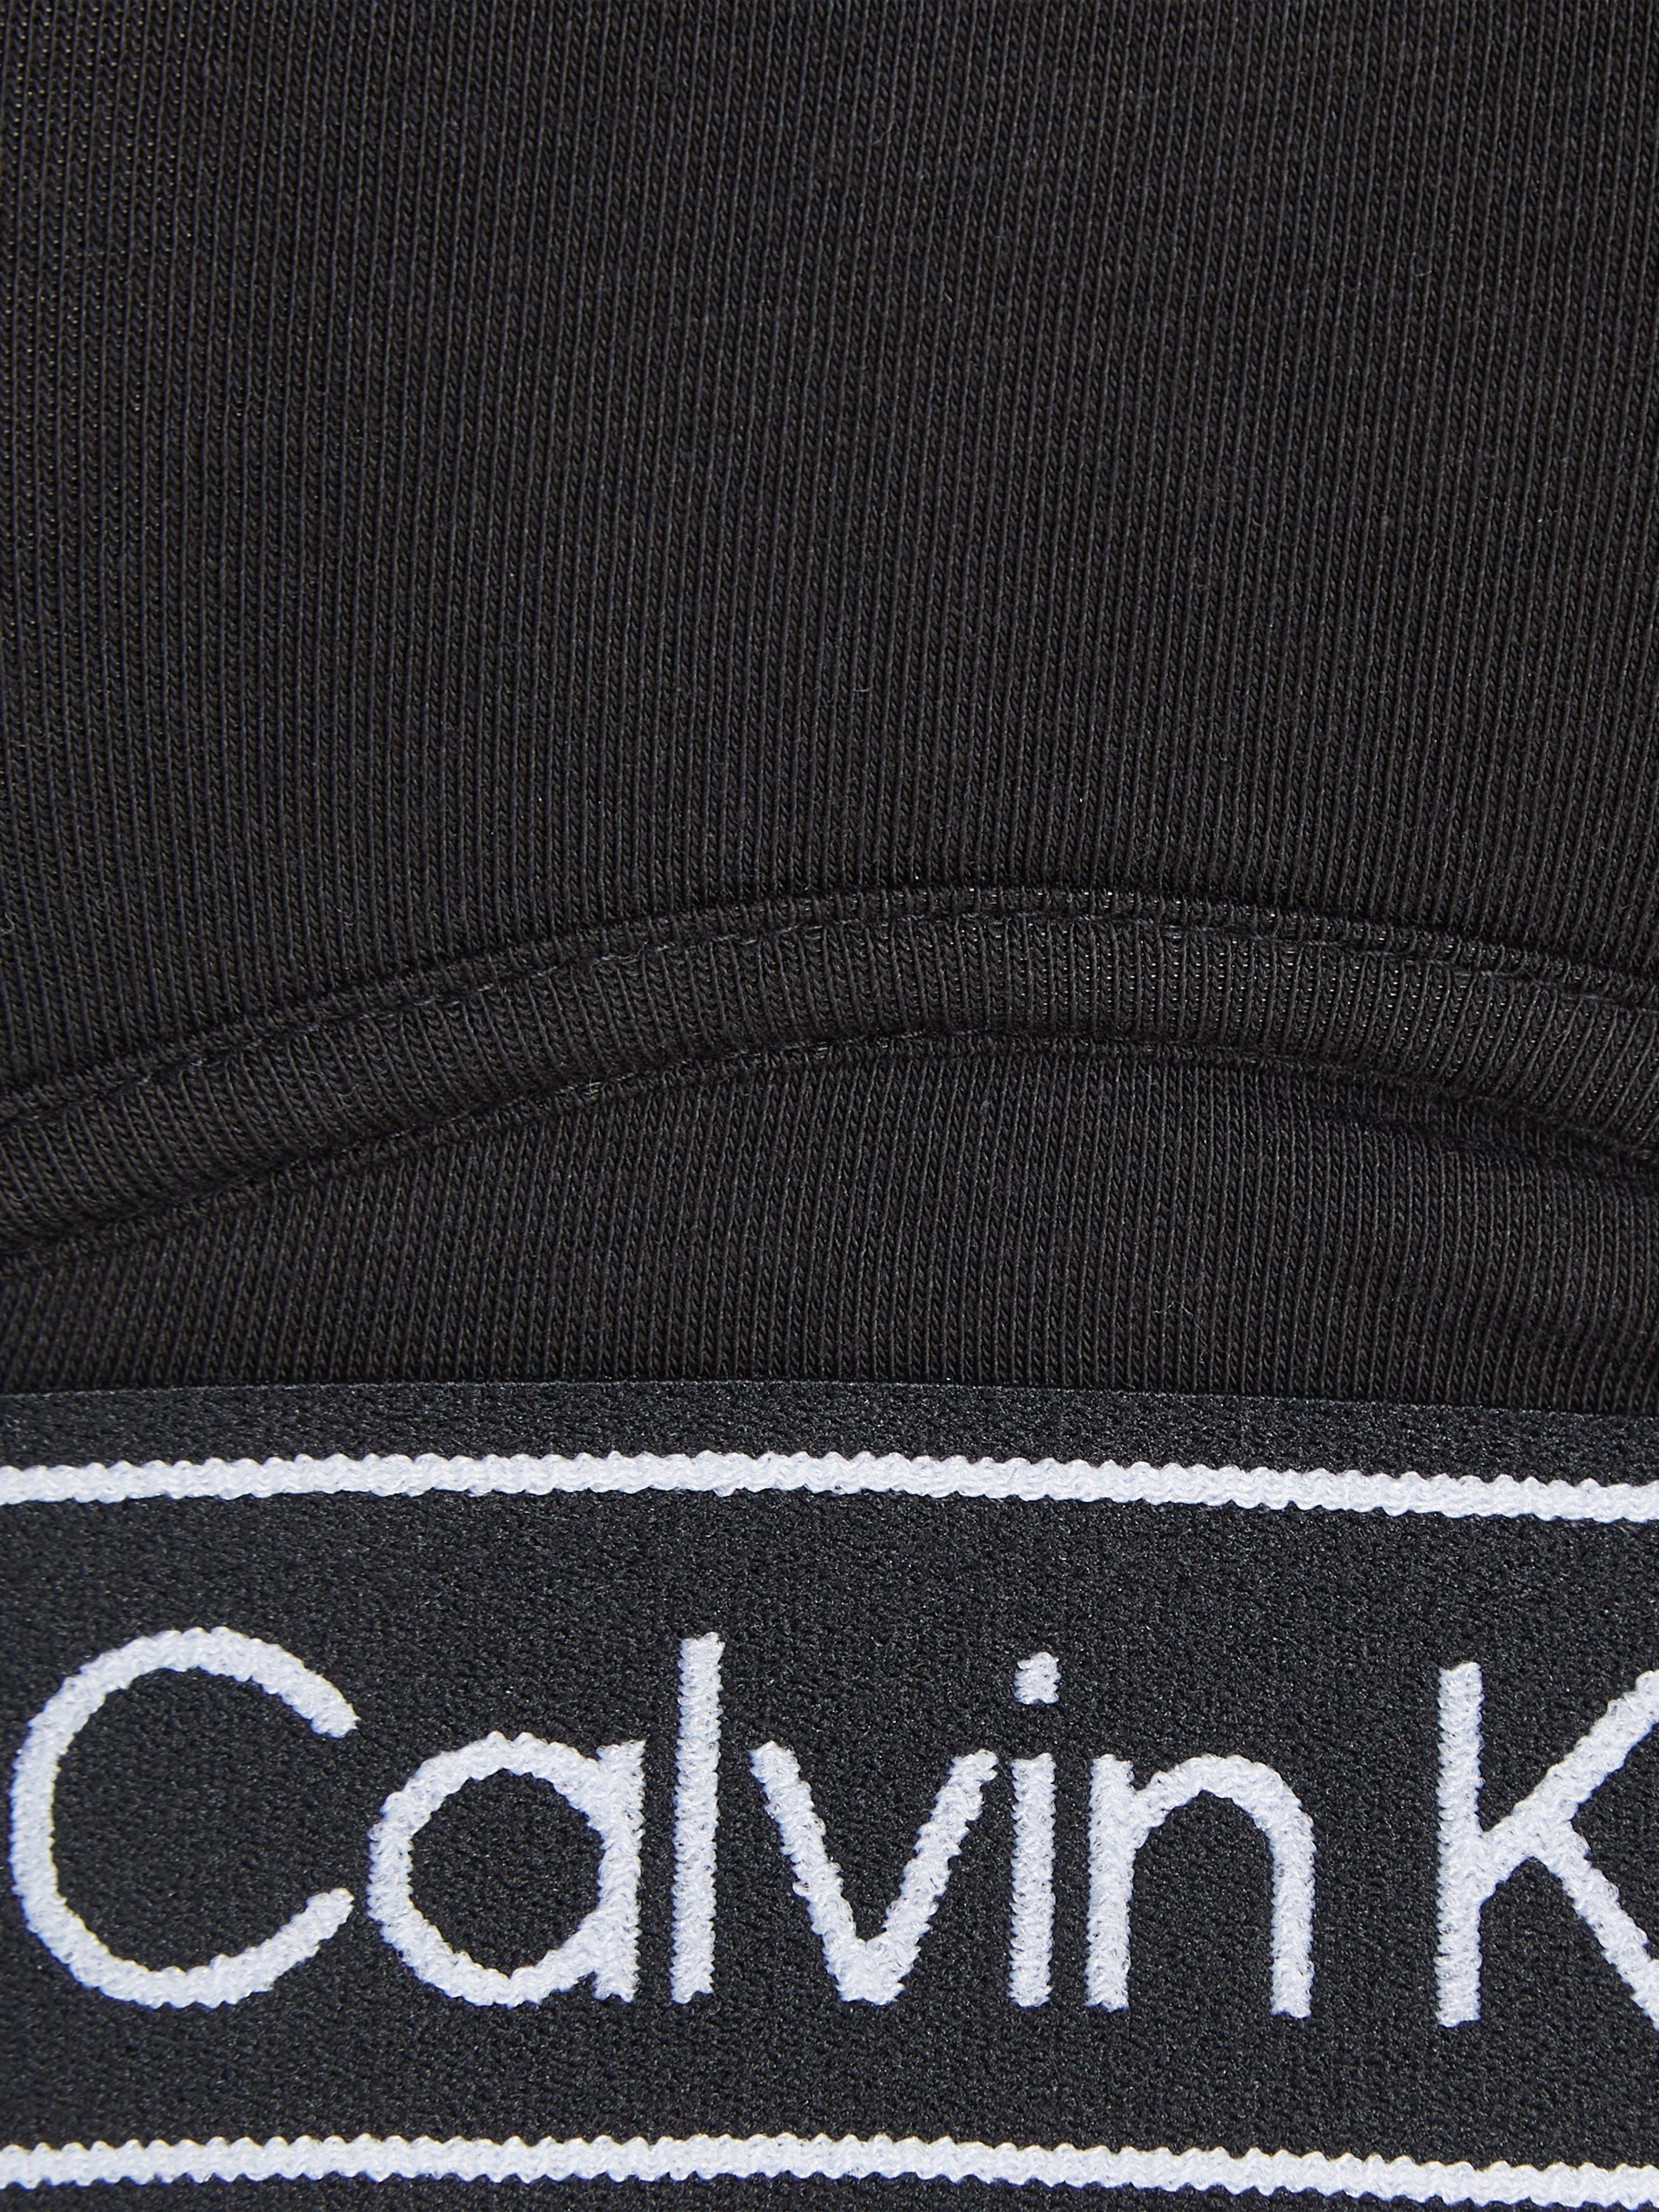 schwarz und Bund Klein an Underwear Trägern mit Calvin Logoschriftzügen Bralette